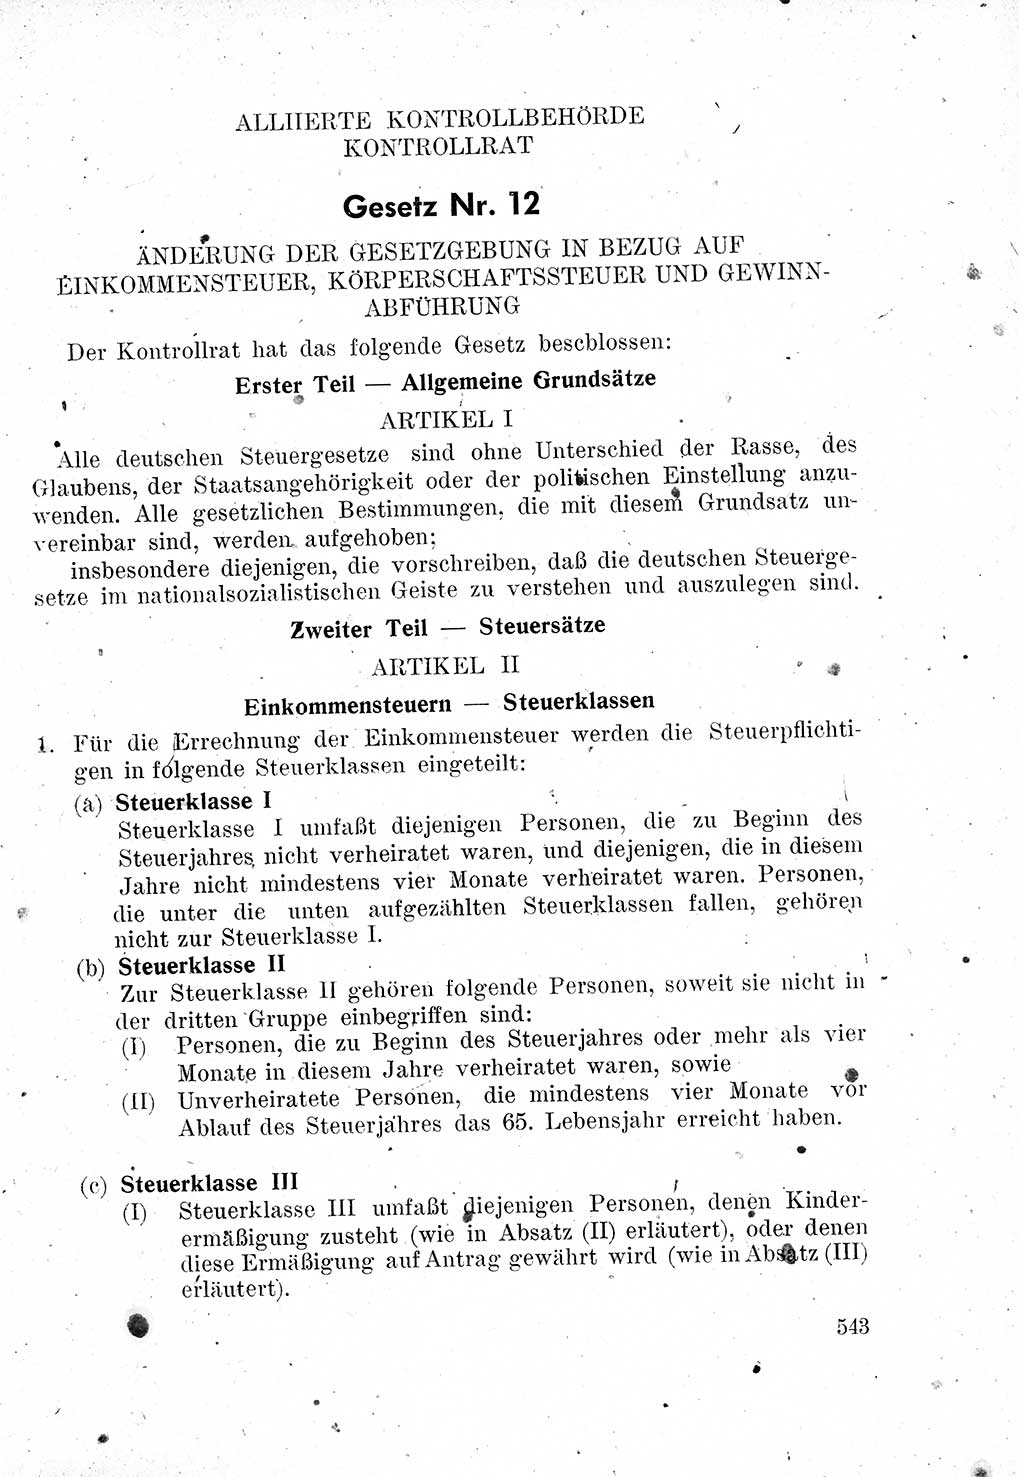 Das Recht der Besatzungsmacht (Deutschland), Proklamationen, Deklerationen, Verordnungen, Gesetze und Bekanntmachungen 1947, Seite 543 (R. Bes. Dtl. 1947, S. 543)